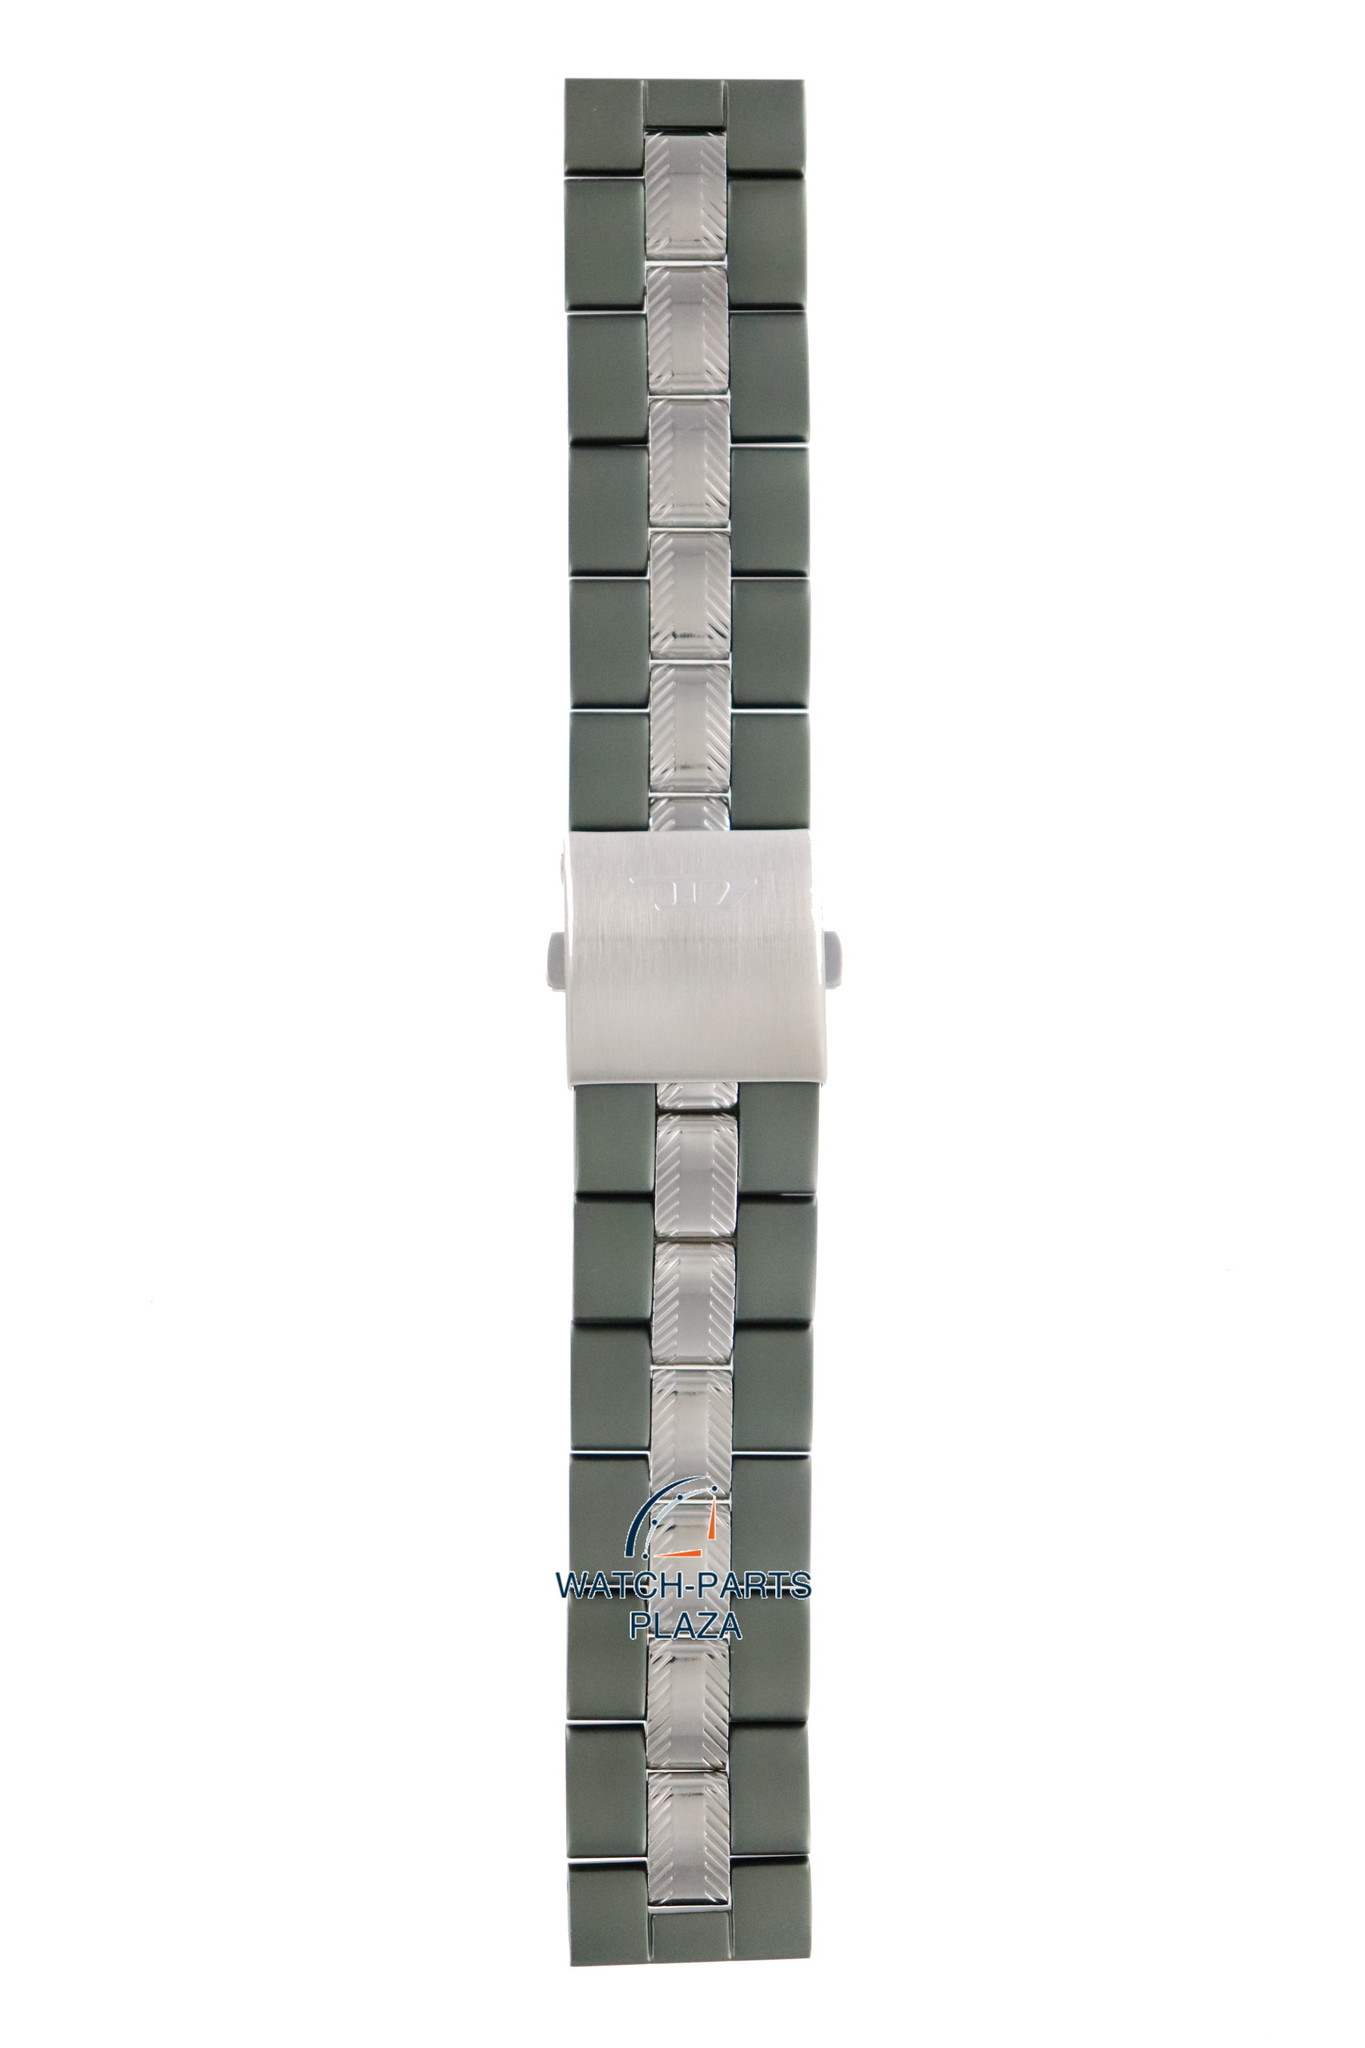 Diesel Diesel DZ1064 green stainless steel watch strap 24mm DZ-1064 bracelet